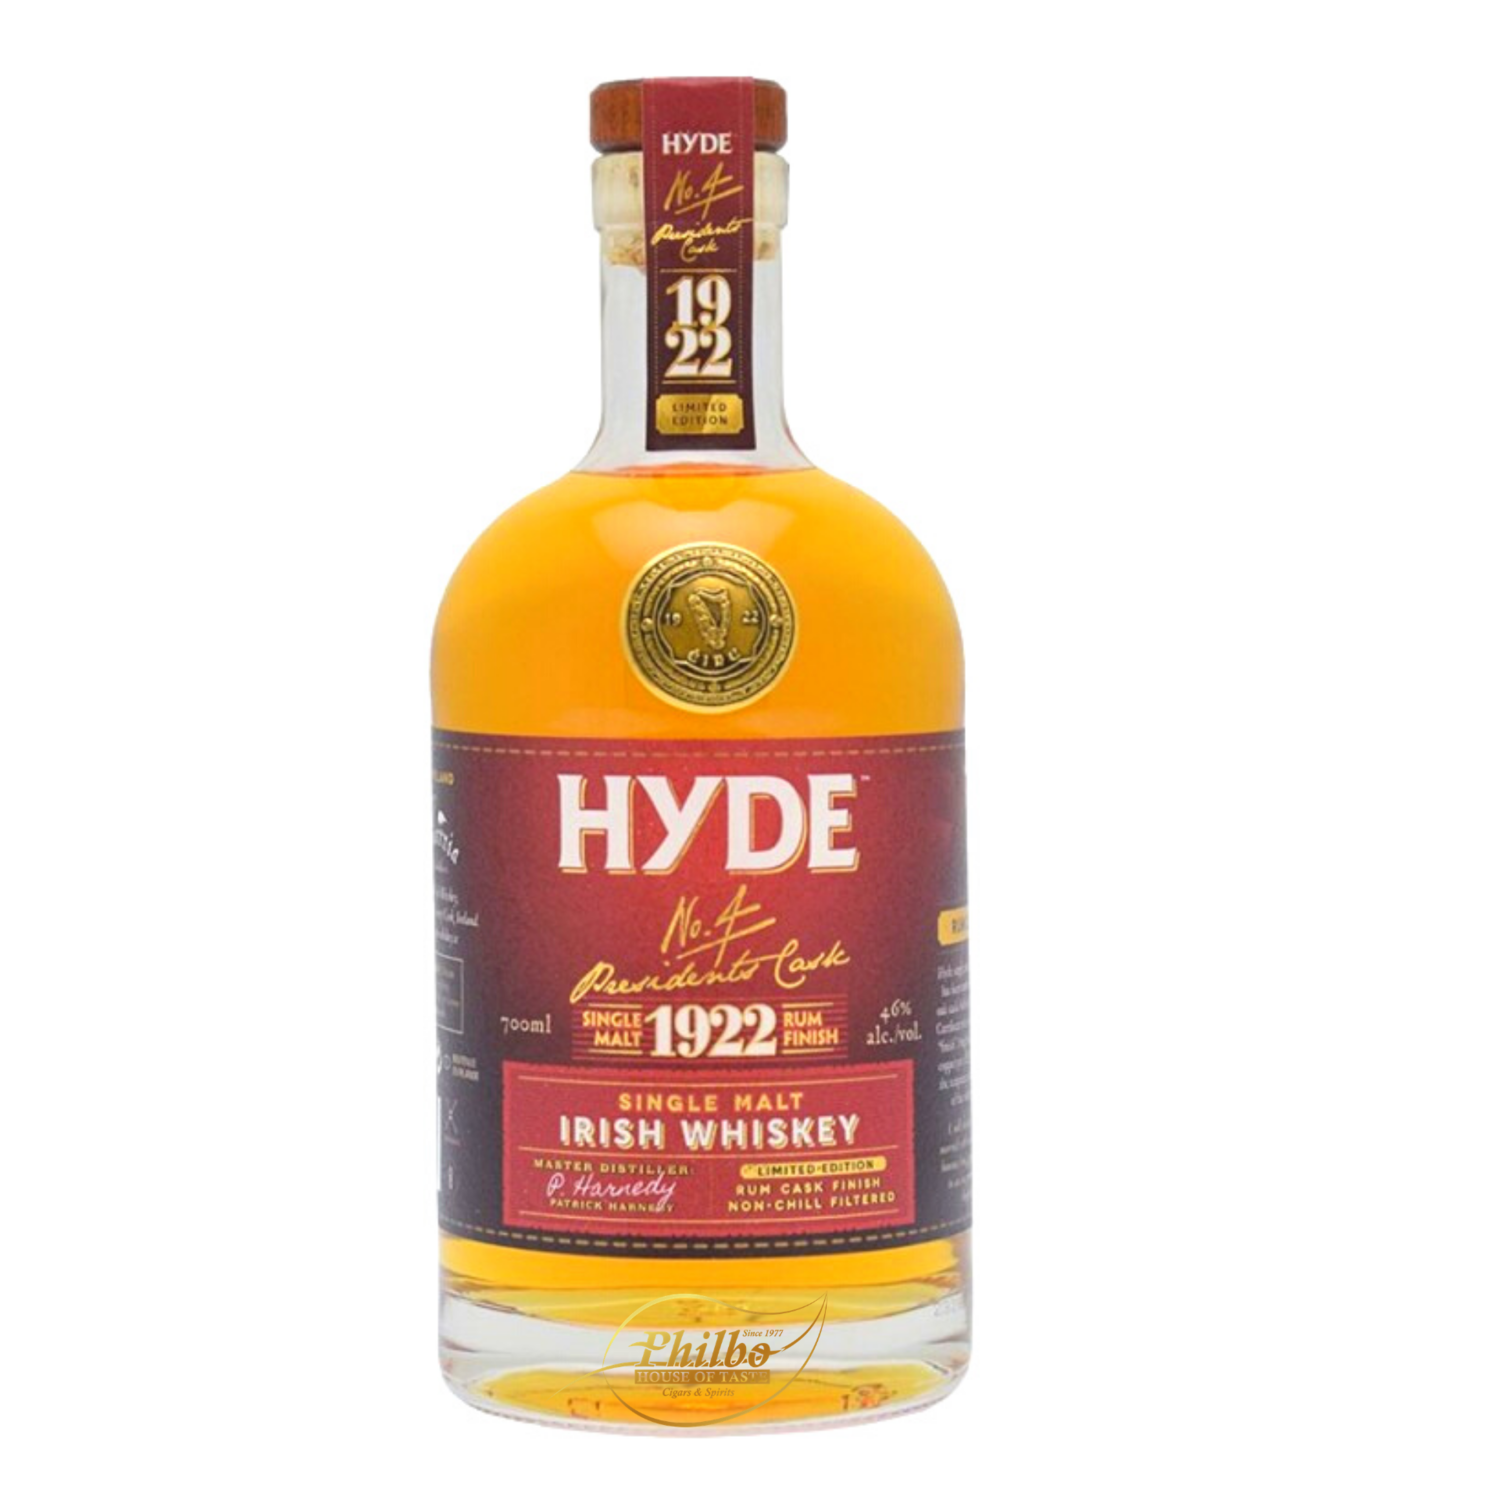 Hyde n°4 6y s.malt rum 46% 70cl